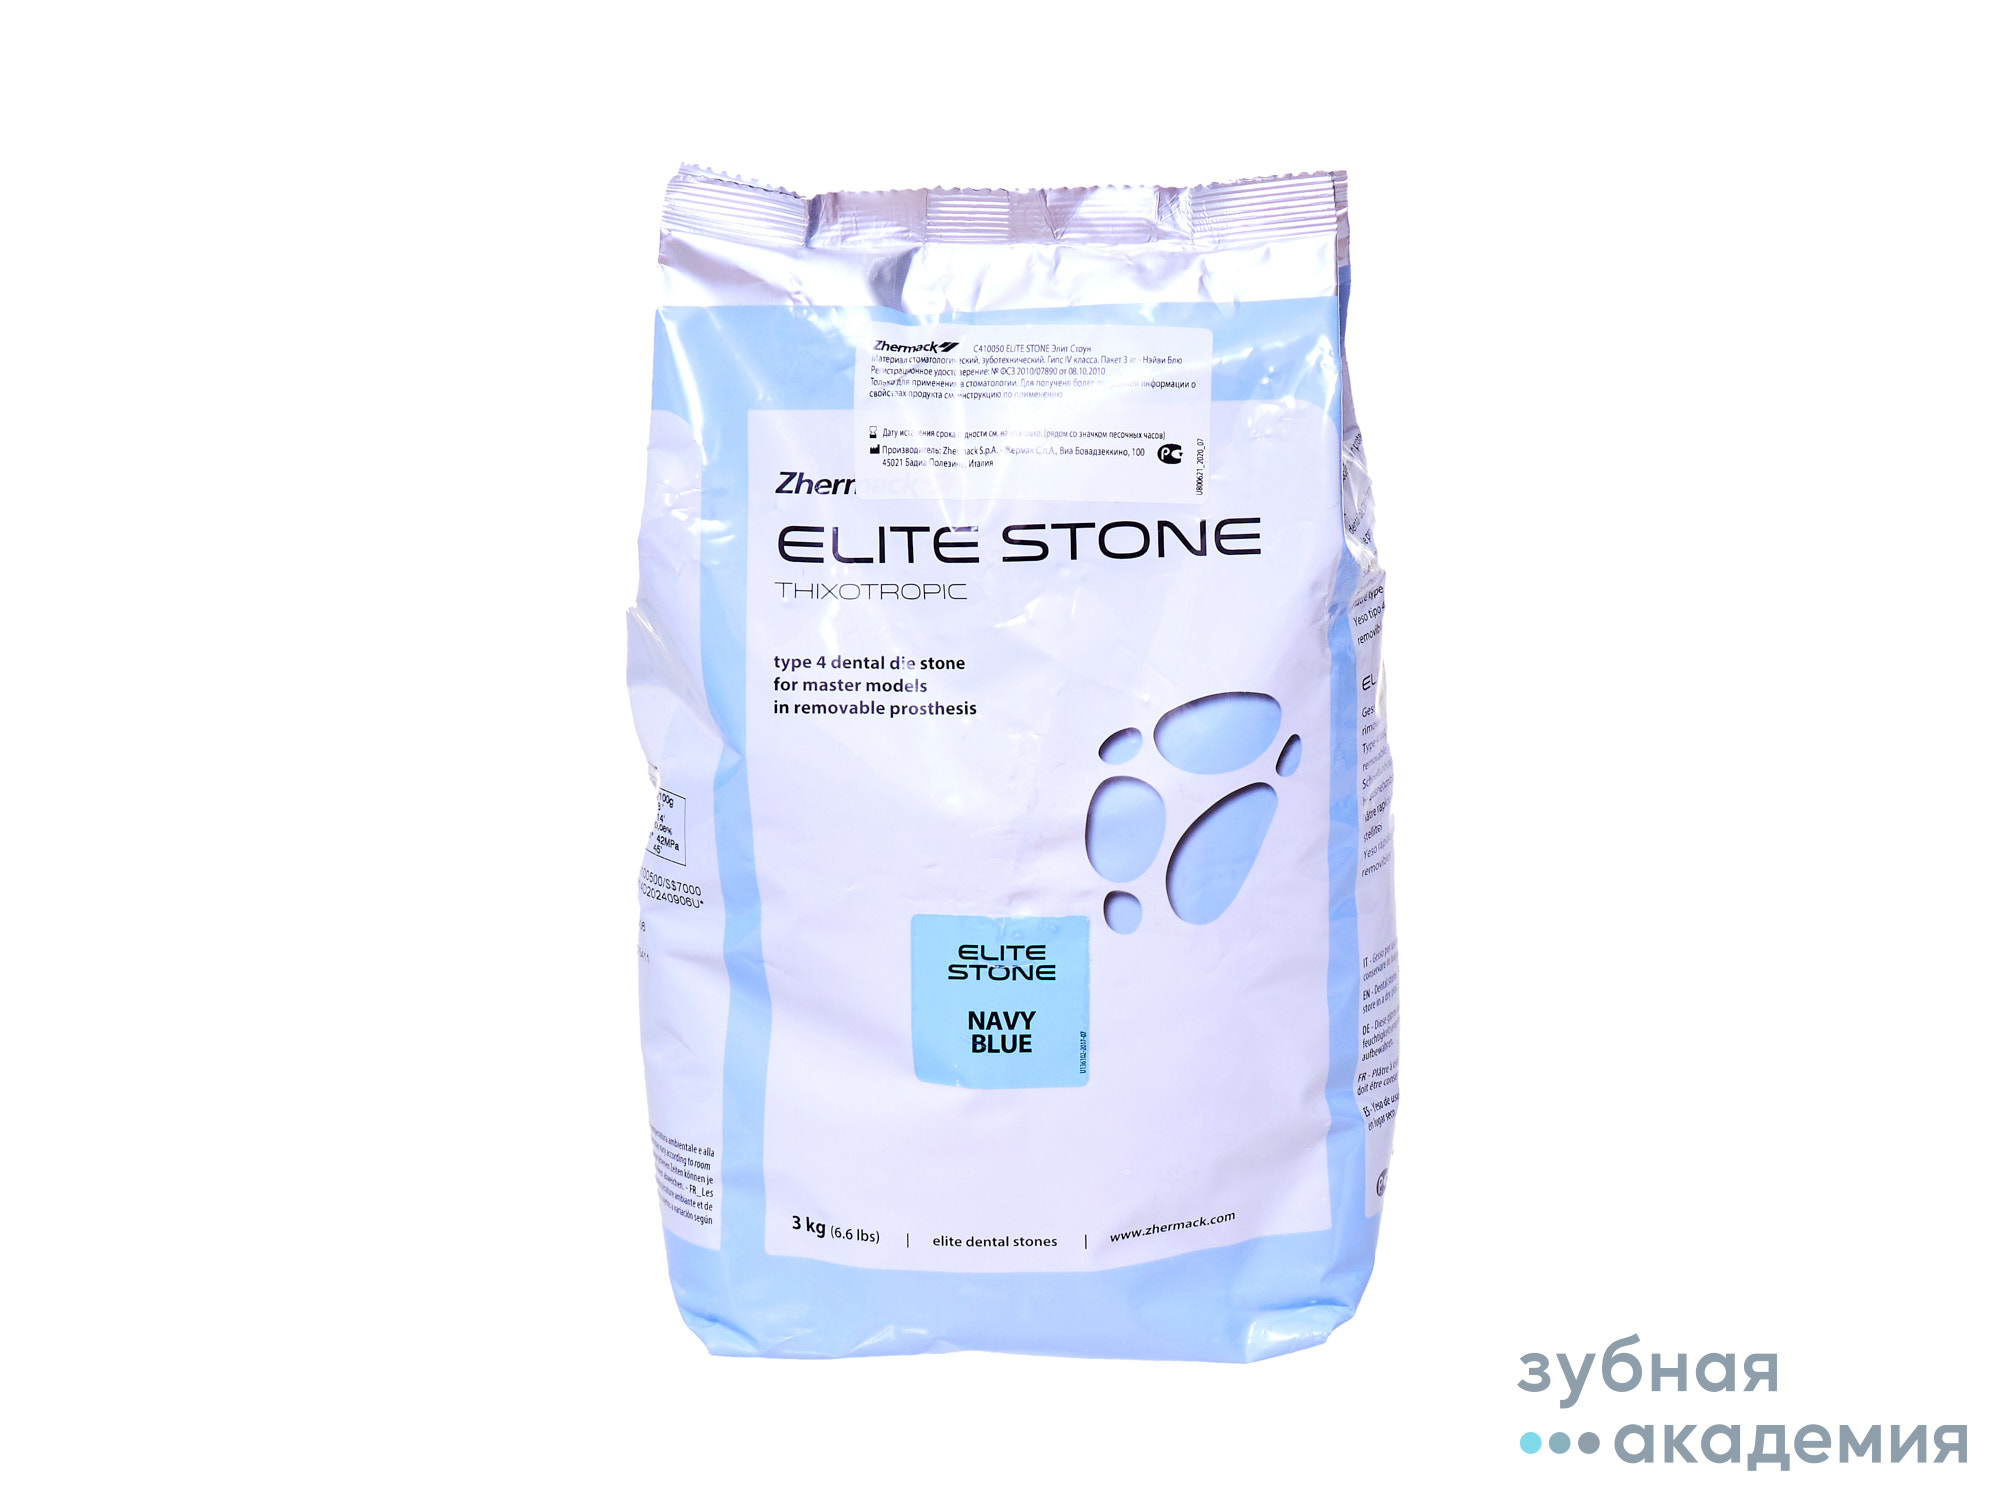 Elite Stone/Элит Стоун - супергипс класс IV (3 кг), (синий) Zhermack/ Италия